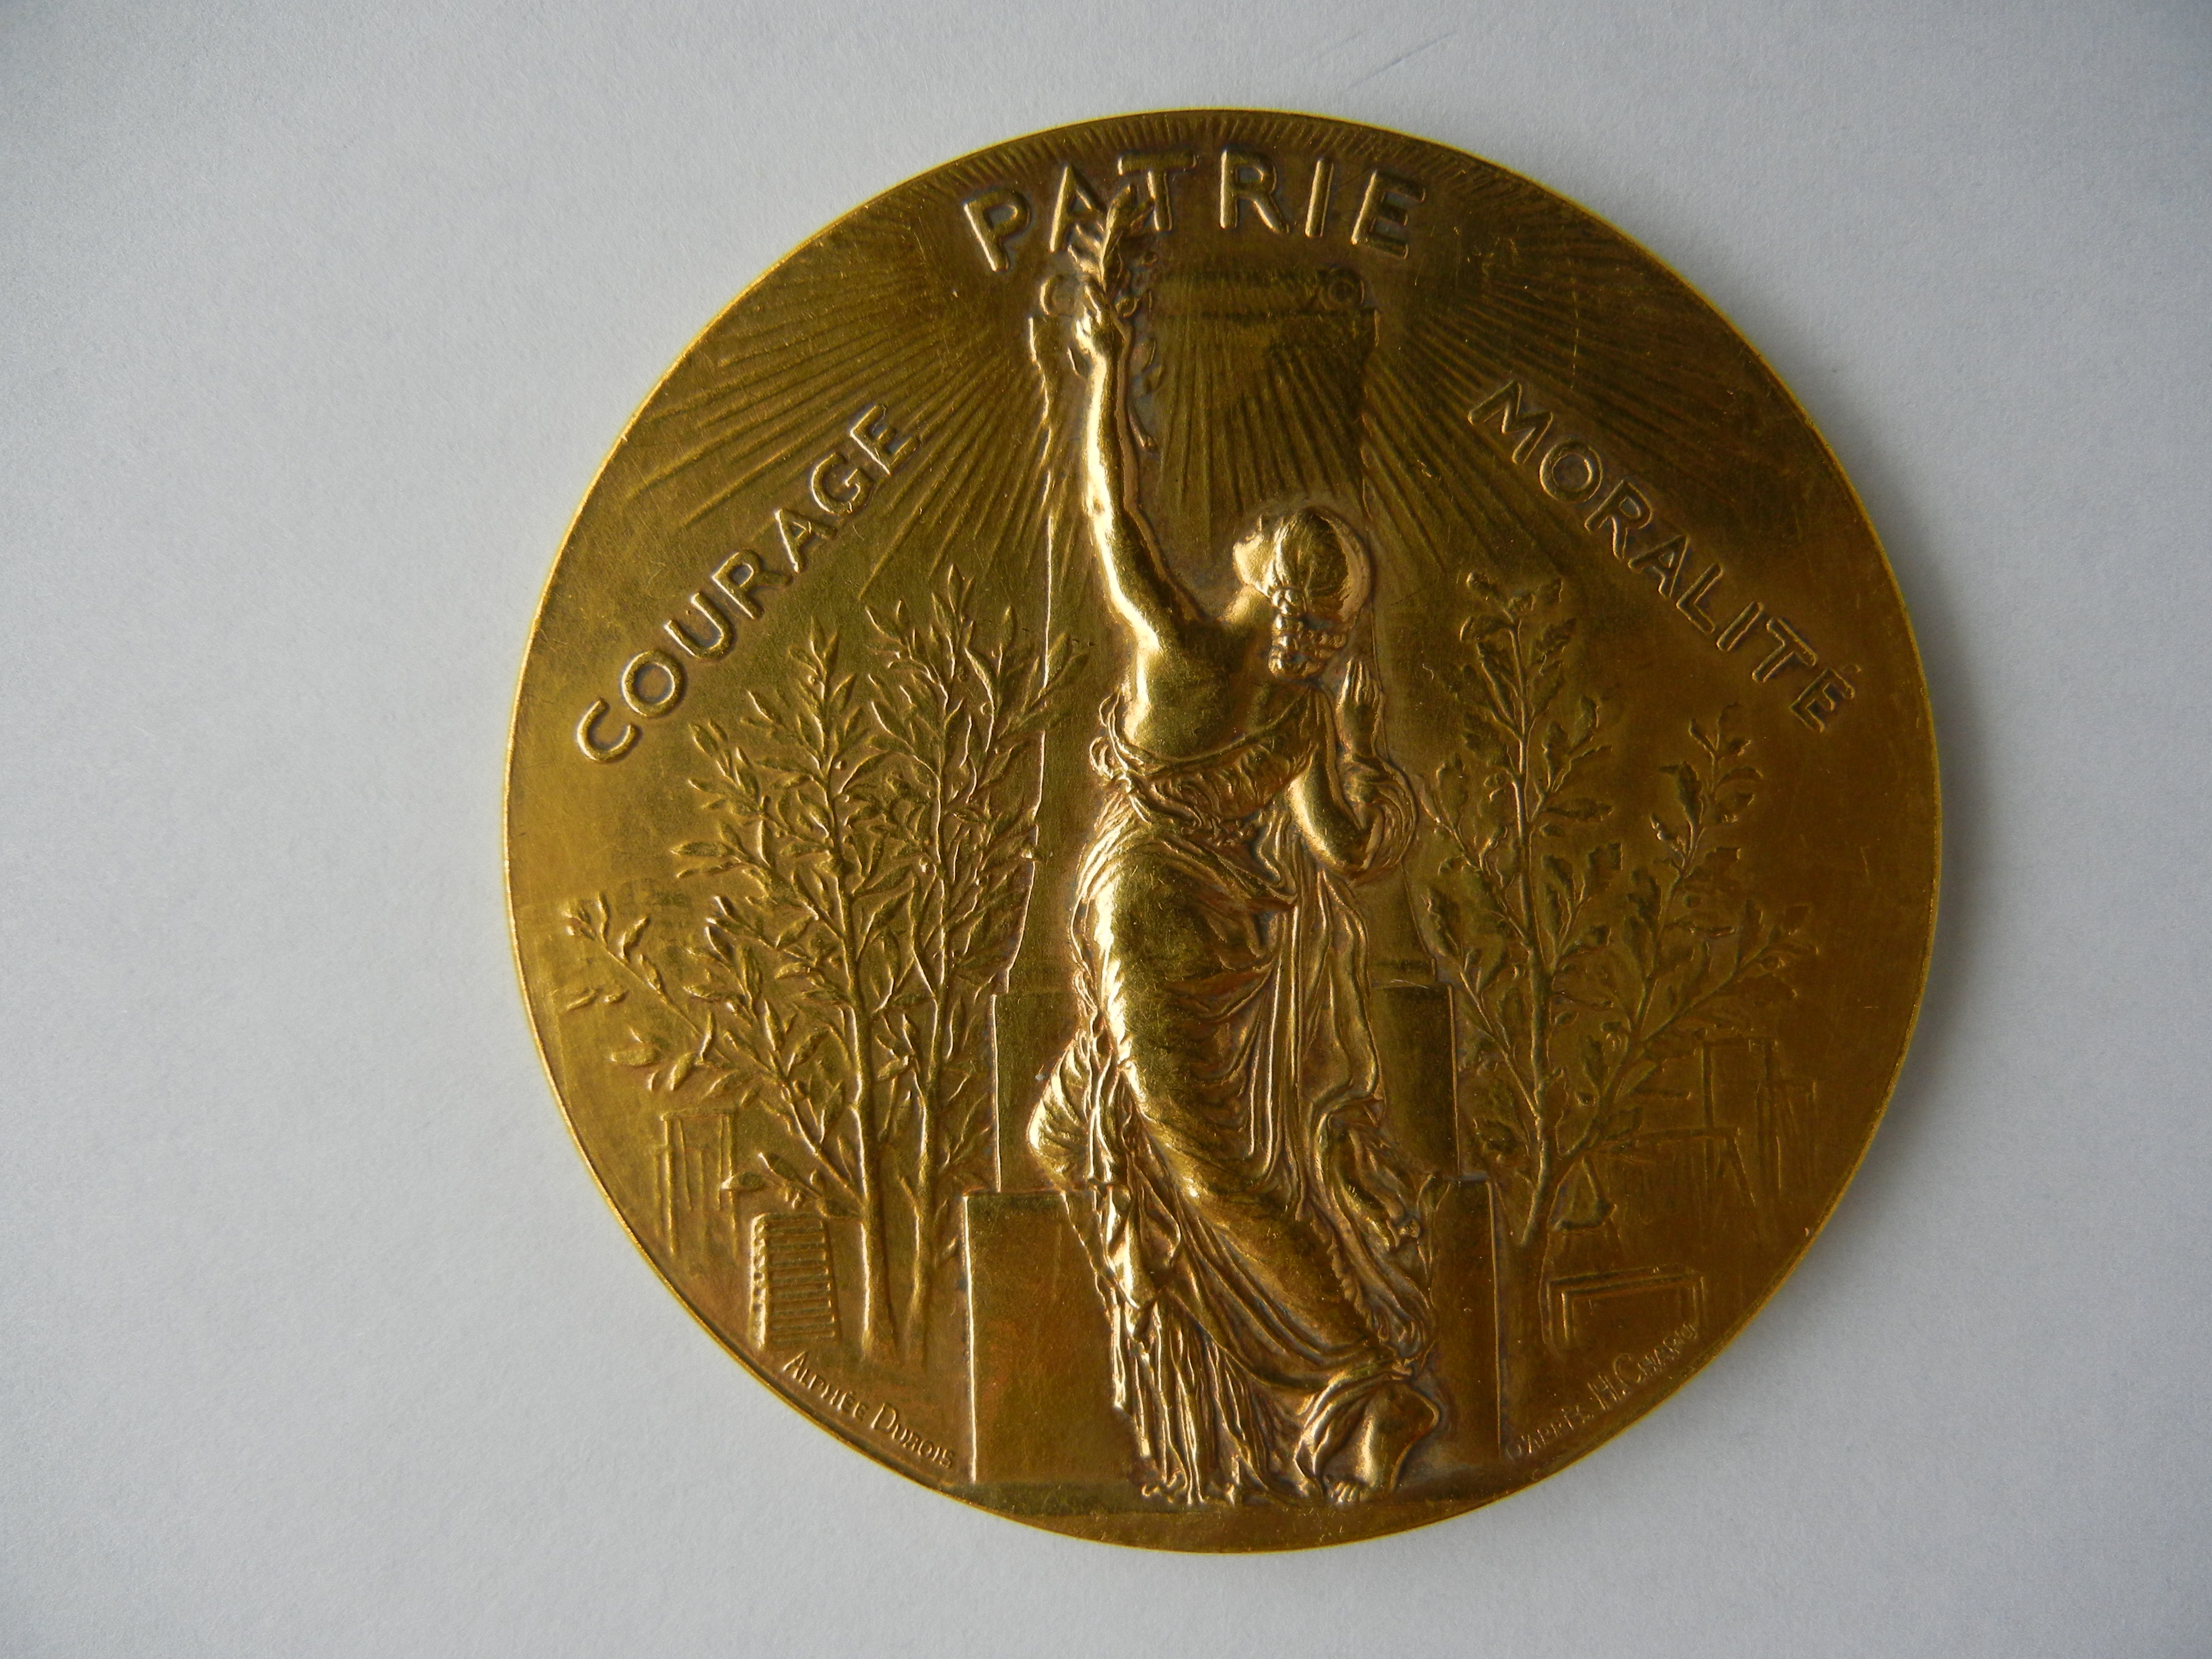 Médaille ARGENT VERMEIL. Union des sociétés de gymnastique de France fondée le 28 septembre 1873. PATRIE COURAGE MORALITE. Graveur Alphée DUBOIS (1831-1905) (1)